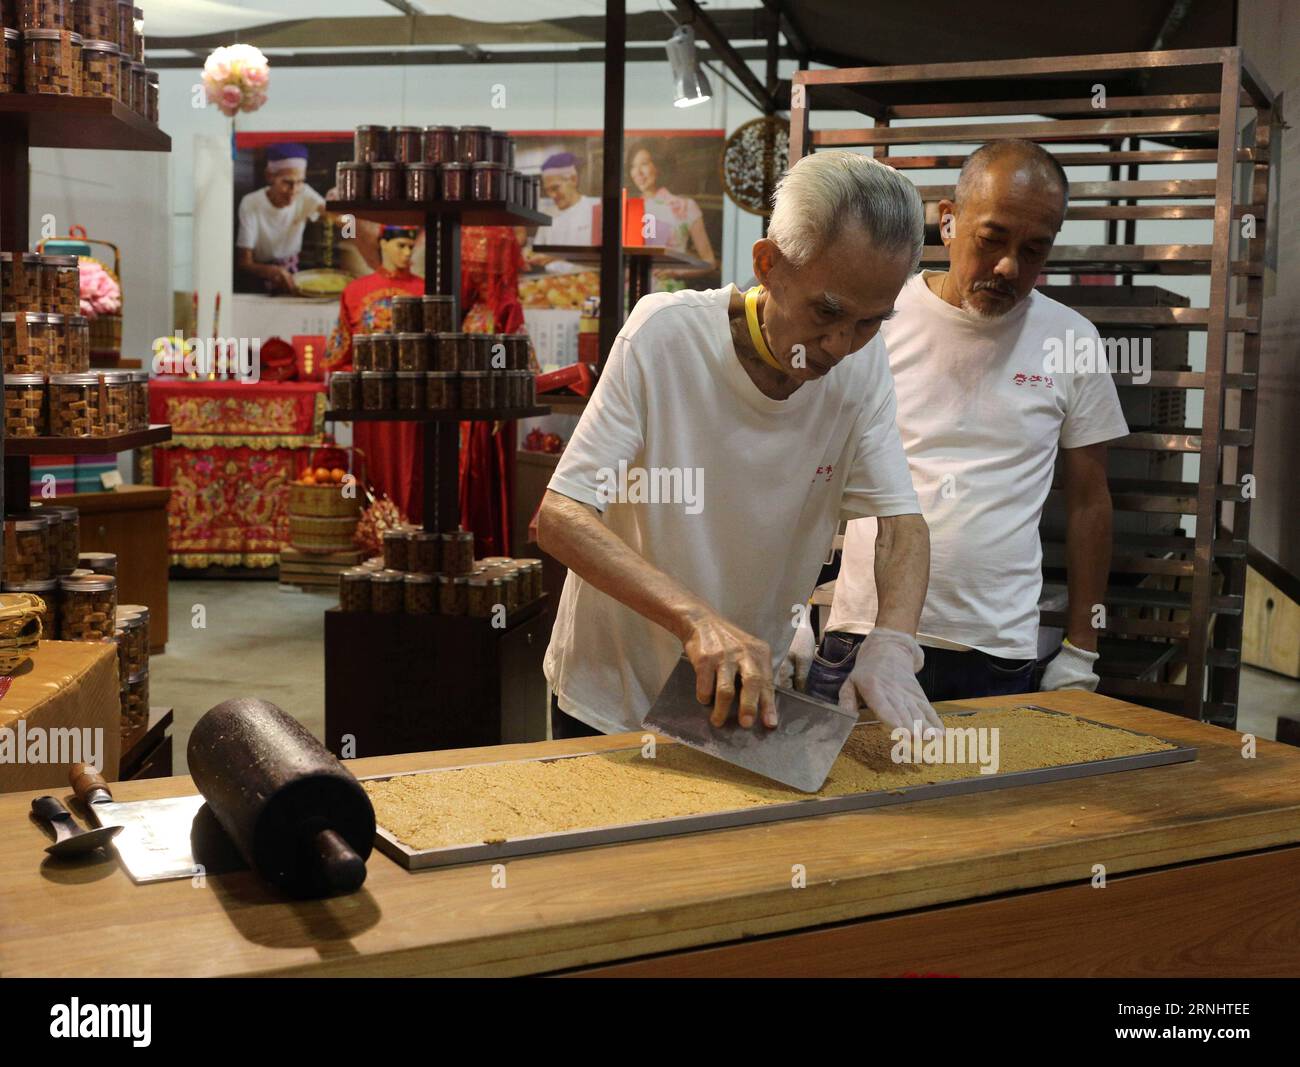 (161209) -- SINGAPUR, 9. Dezember 2016 -- Lebensmittelhändler bereiten traditionelle Snacks während des Teochew Festivals 2016 auf der Marina Bay Sands Expo and Convention Center in Singapur, 9. Dezember 2016, zu. Das Teochew Festival 2016, das am Freitag begann, bietet kulturelle Galerie, exquisite Handwerkskunst, Teochew fest sowie kulturelle Aufführungen. ) (Zjy) SINGAPORE-TEOCHEW FESTIVAL BaoxXuelin PUBLICATIONxNOTxINxCHN Singapore DEC 9 2016 Lebensmittelhändler bereiten traditionelle Snacks während des Teochew Festivals 2016 AUF DER Singapore S Marina Bay Sands EXPO und dem Convention Center DEC 9 2016 dem Teochew Festival 2016 zu Stockfoto